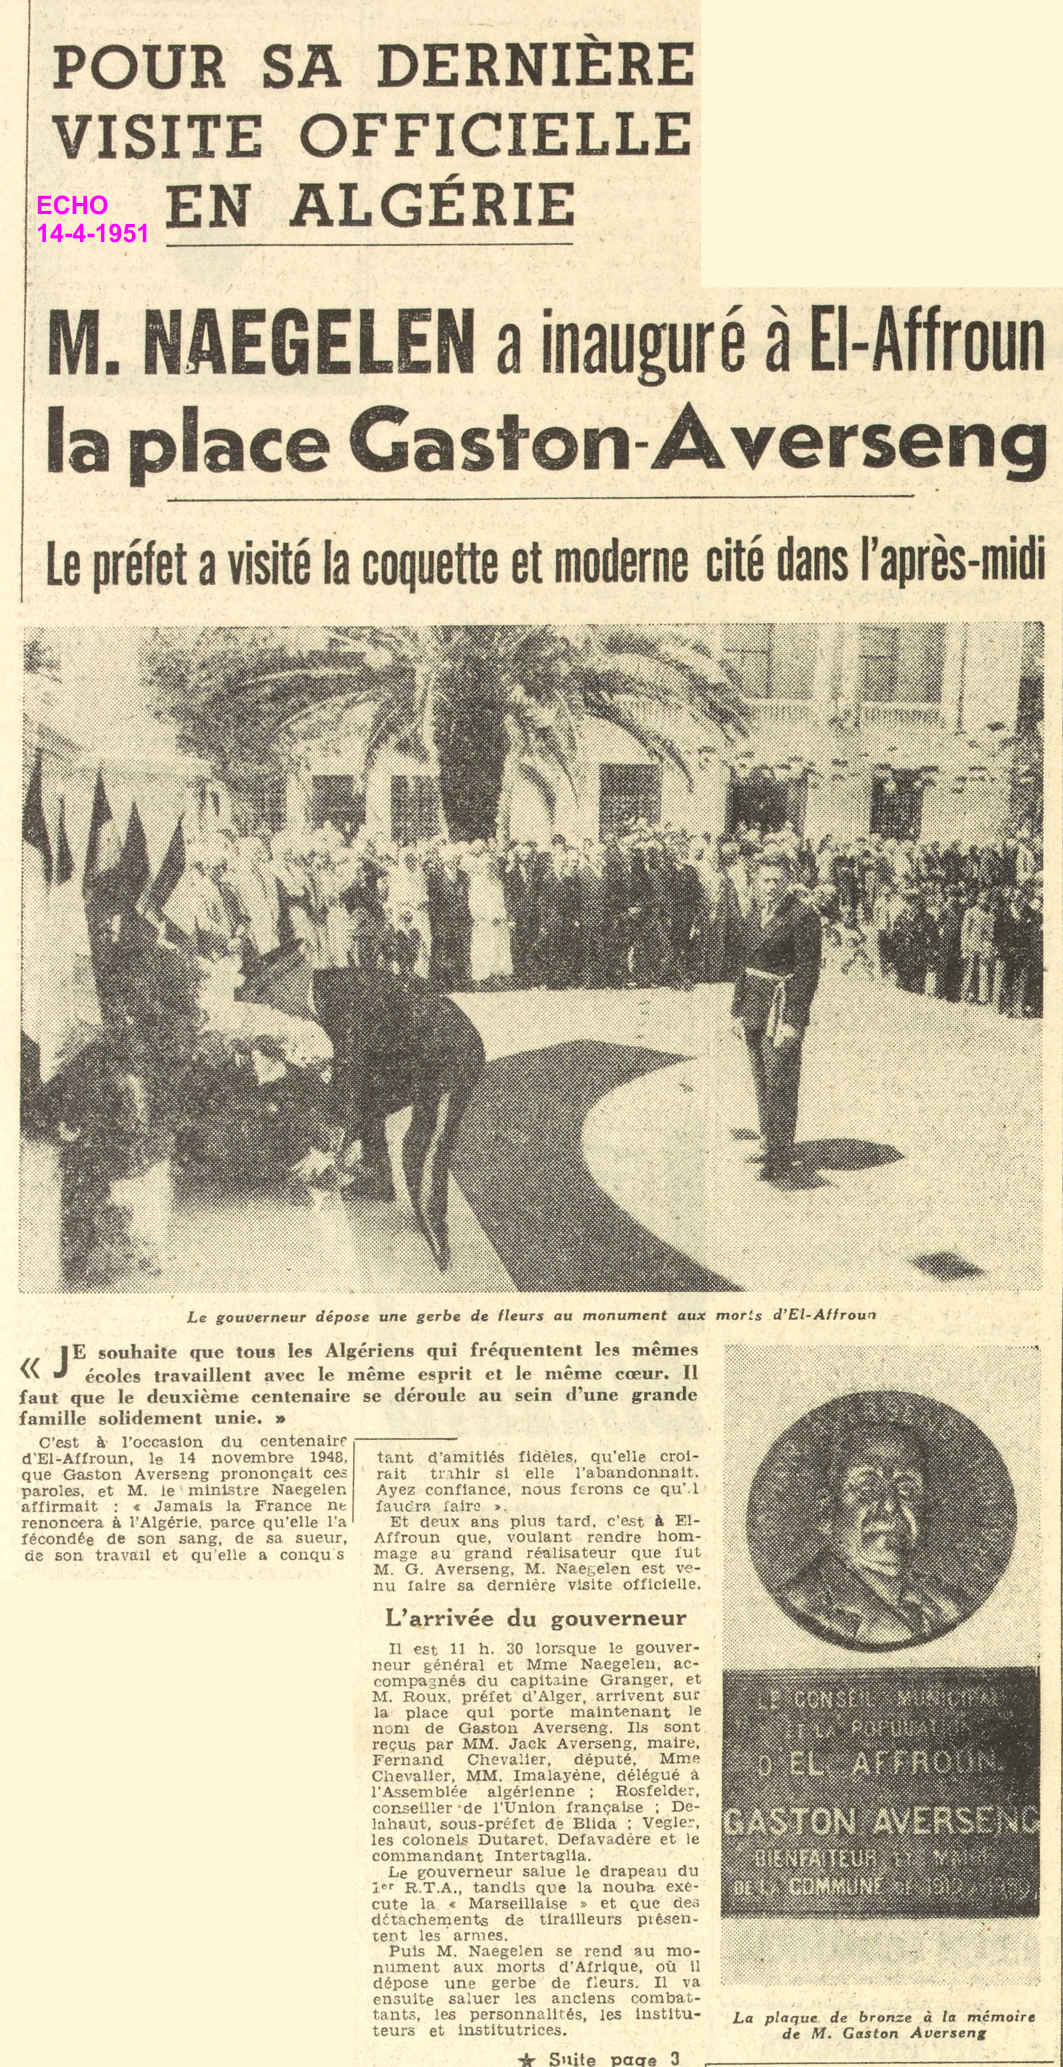 M. NAEGELEN a inauguré à El-Affroun la place Gaston-Averseng